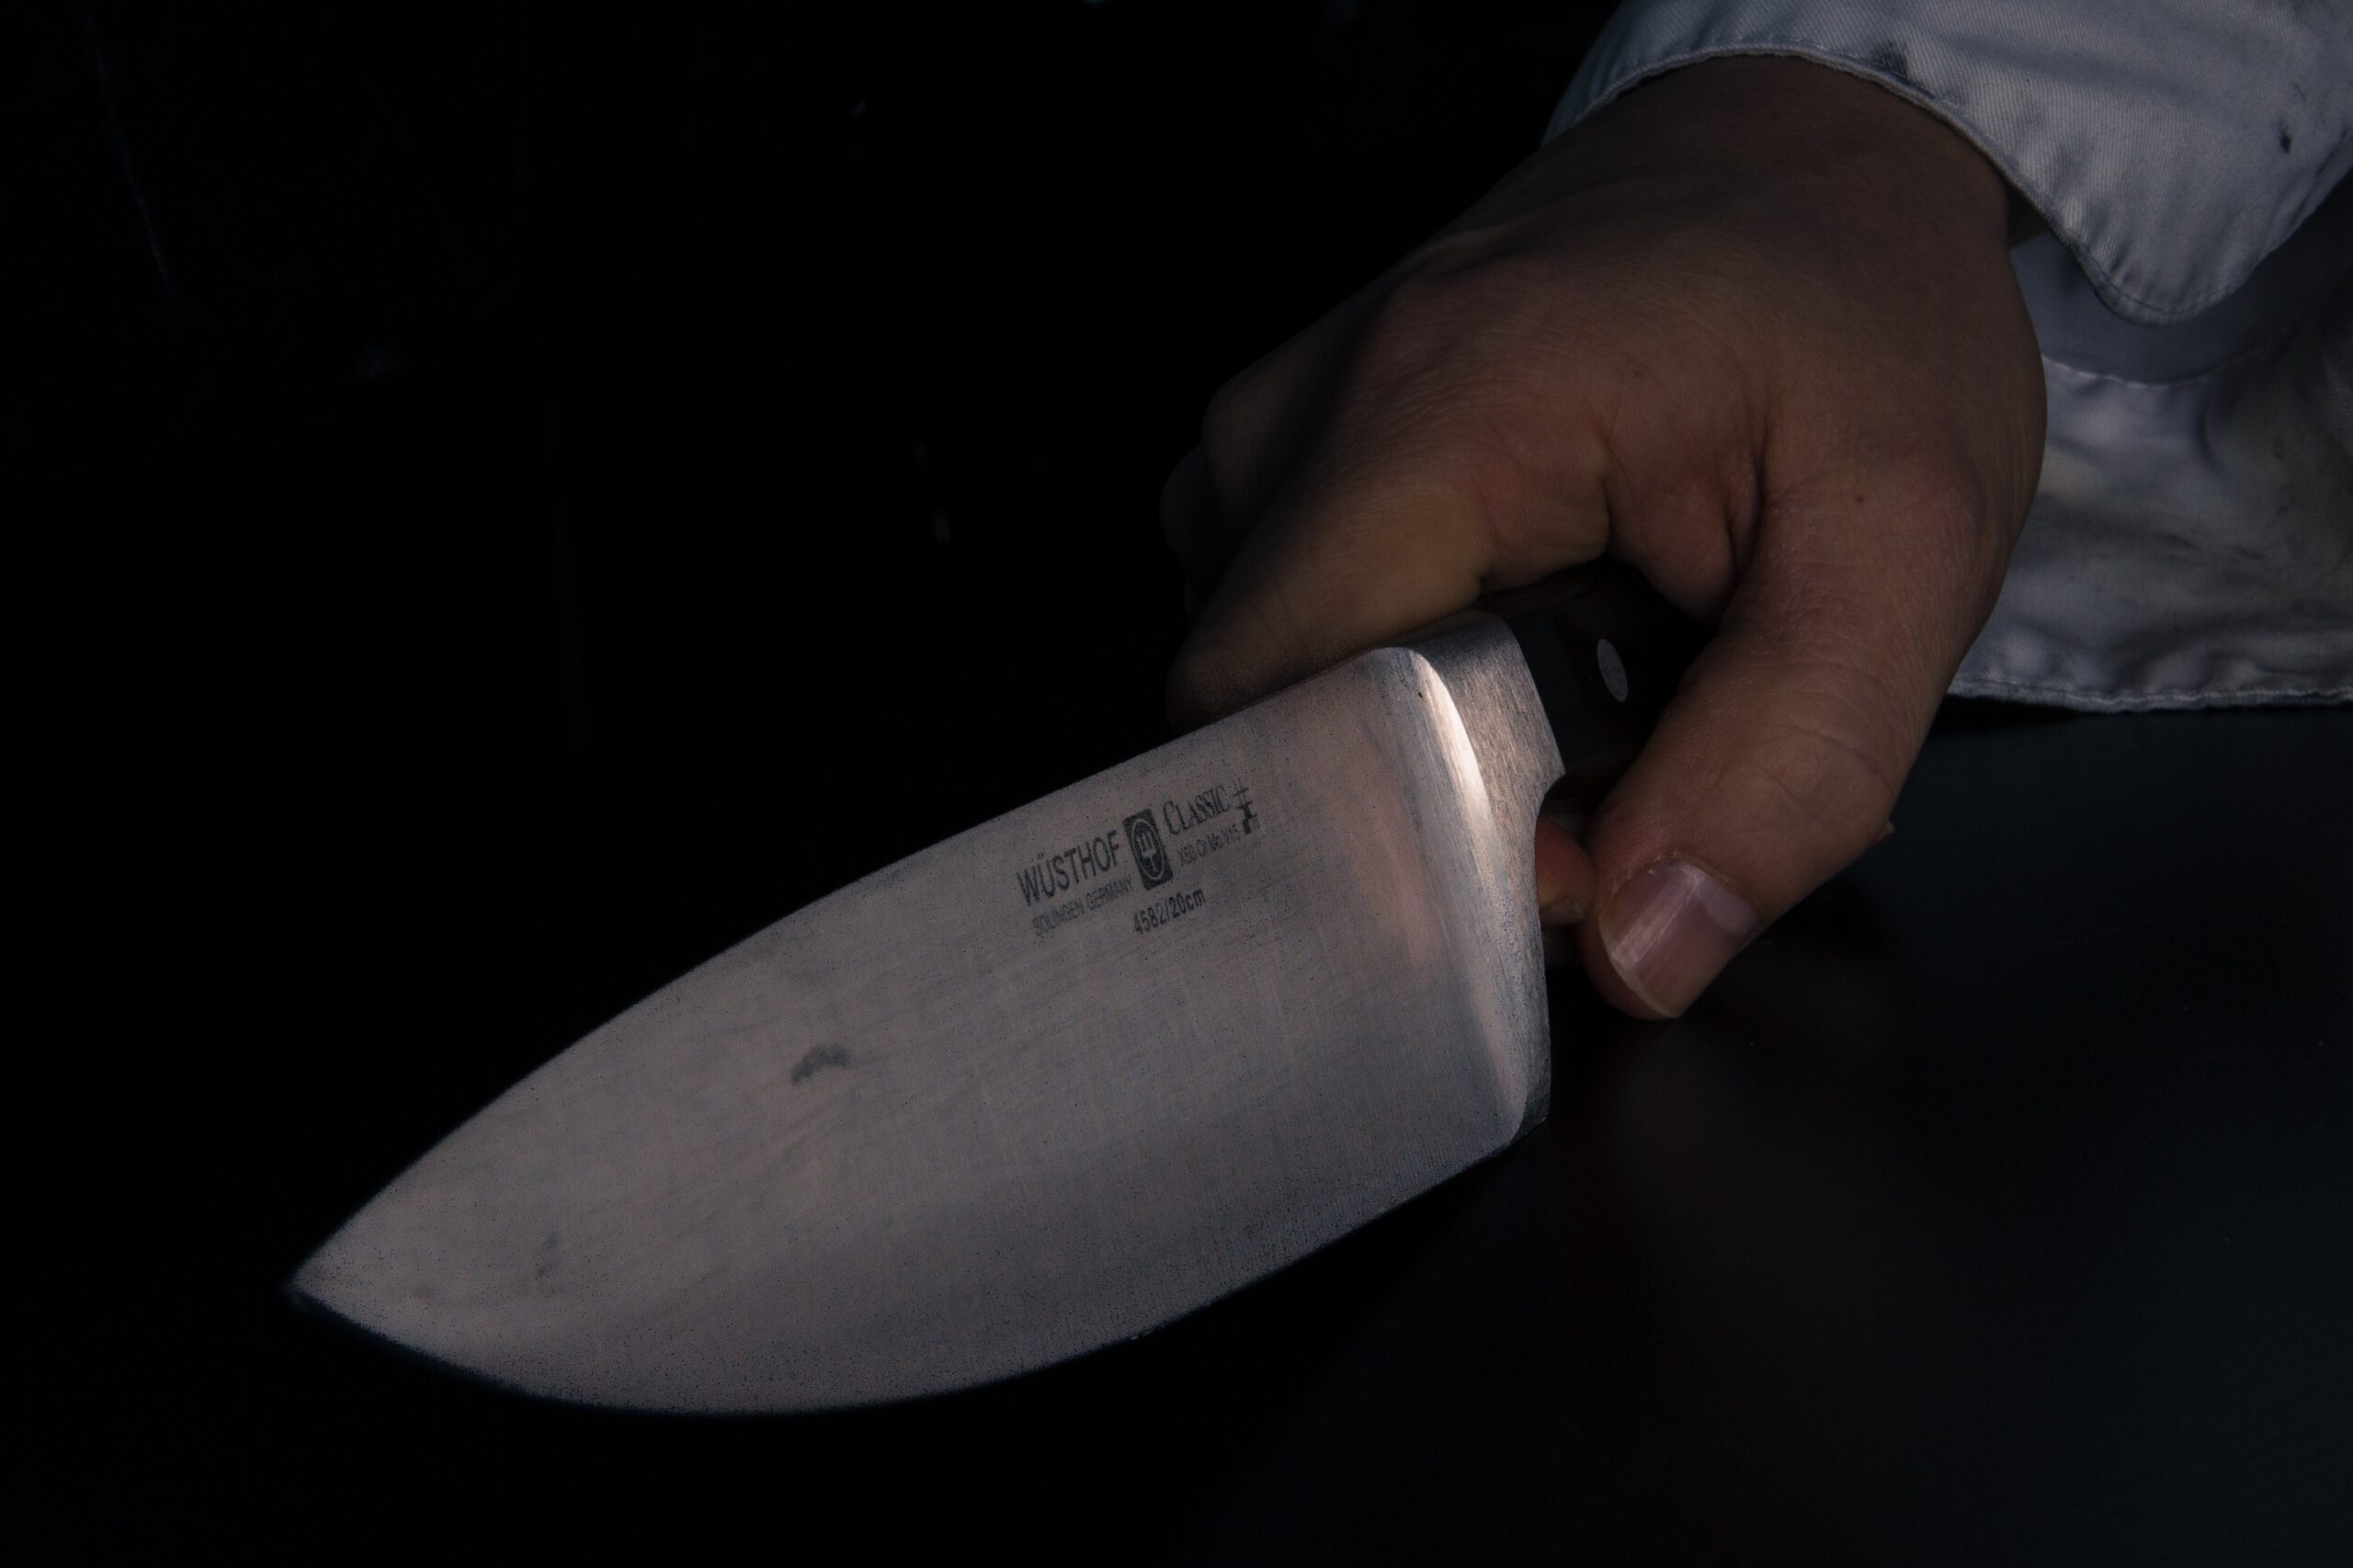 Словесная перепалка в Ленобласти переросла в драку с ножом и закончилась уголовкой